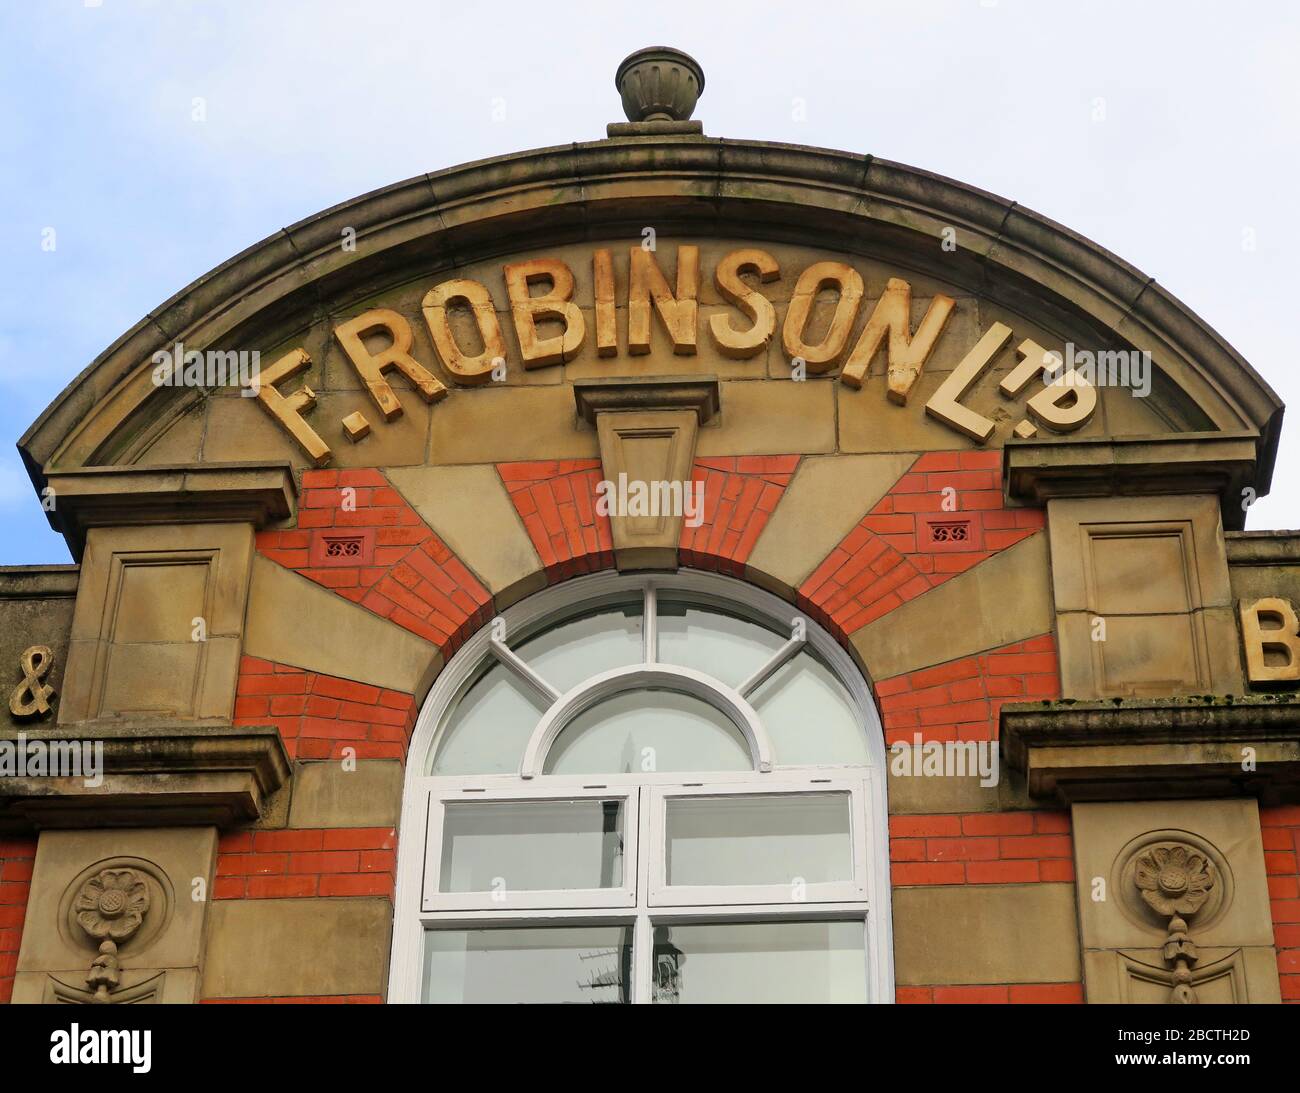 La Frederic Robinson Unicorn Brewery, birrifici, imbottigliatori, uffici, Lower Hillgate, Stockport, Greater Manchester, Inghilterra, Regno Unito, SK1 1JJ Foto Stock